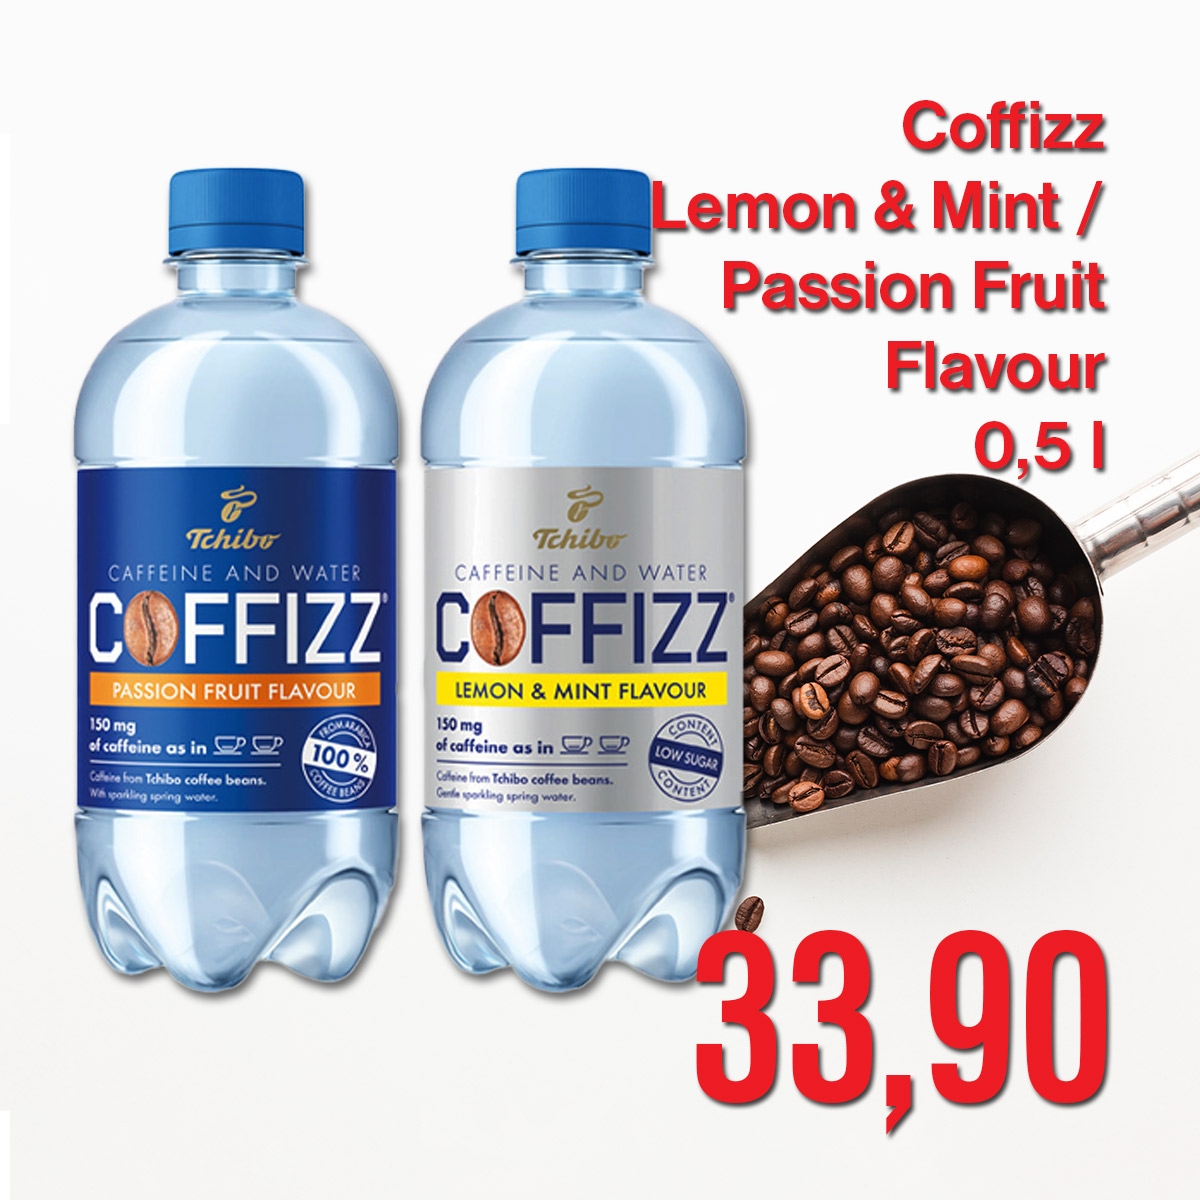 Coffizz Lemon & Mint / Passion Fruit Flavour 0,5 l